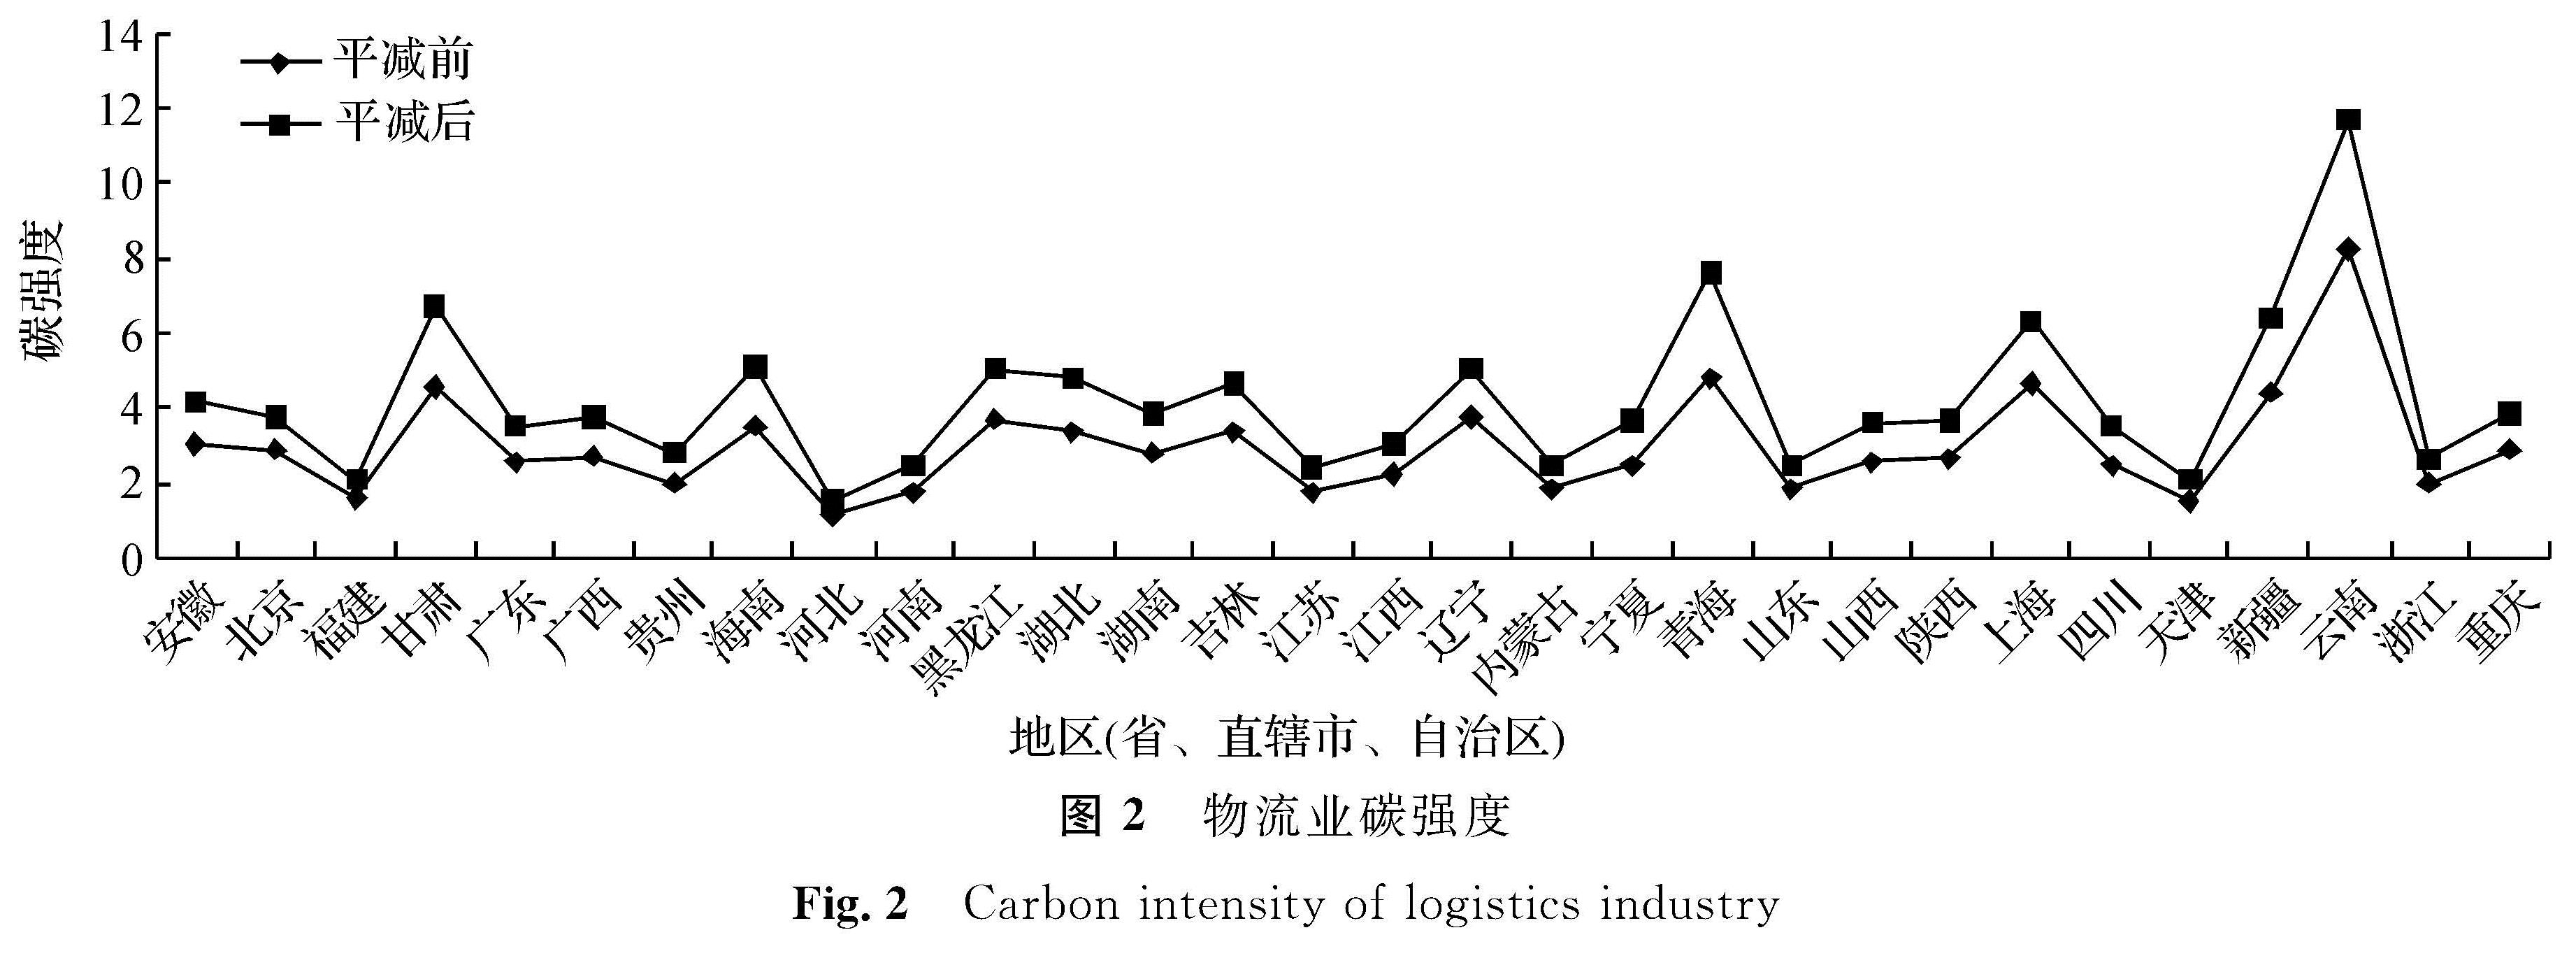 图2 物流业碳强度<br/>Fig.2 Carbon intensity of logistics industry